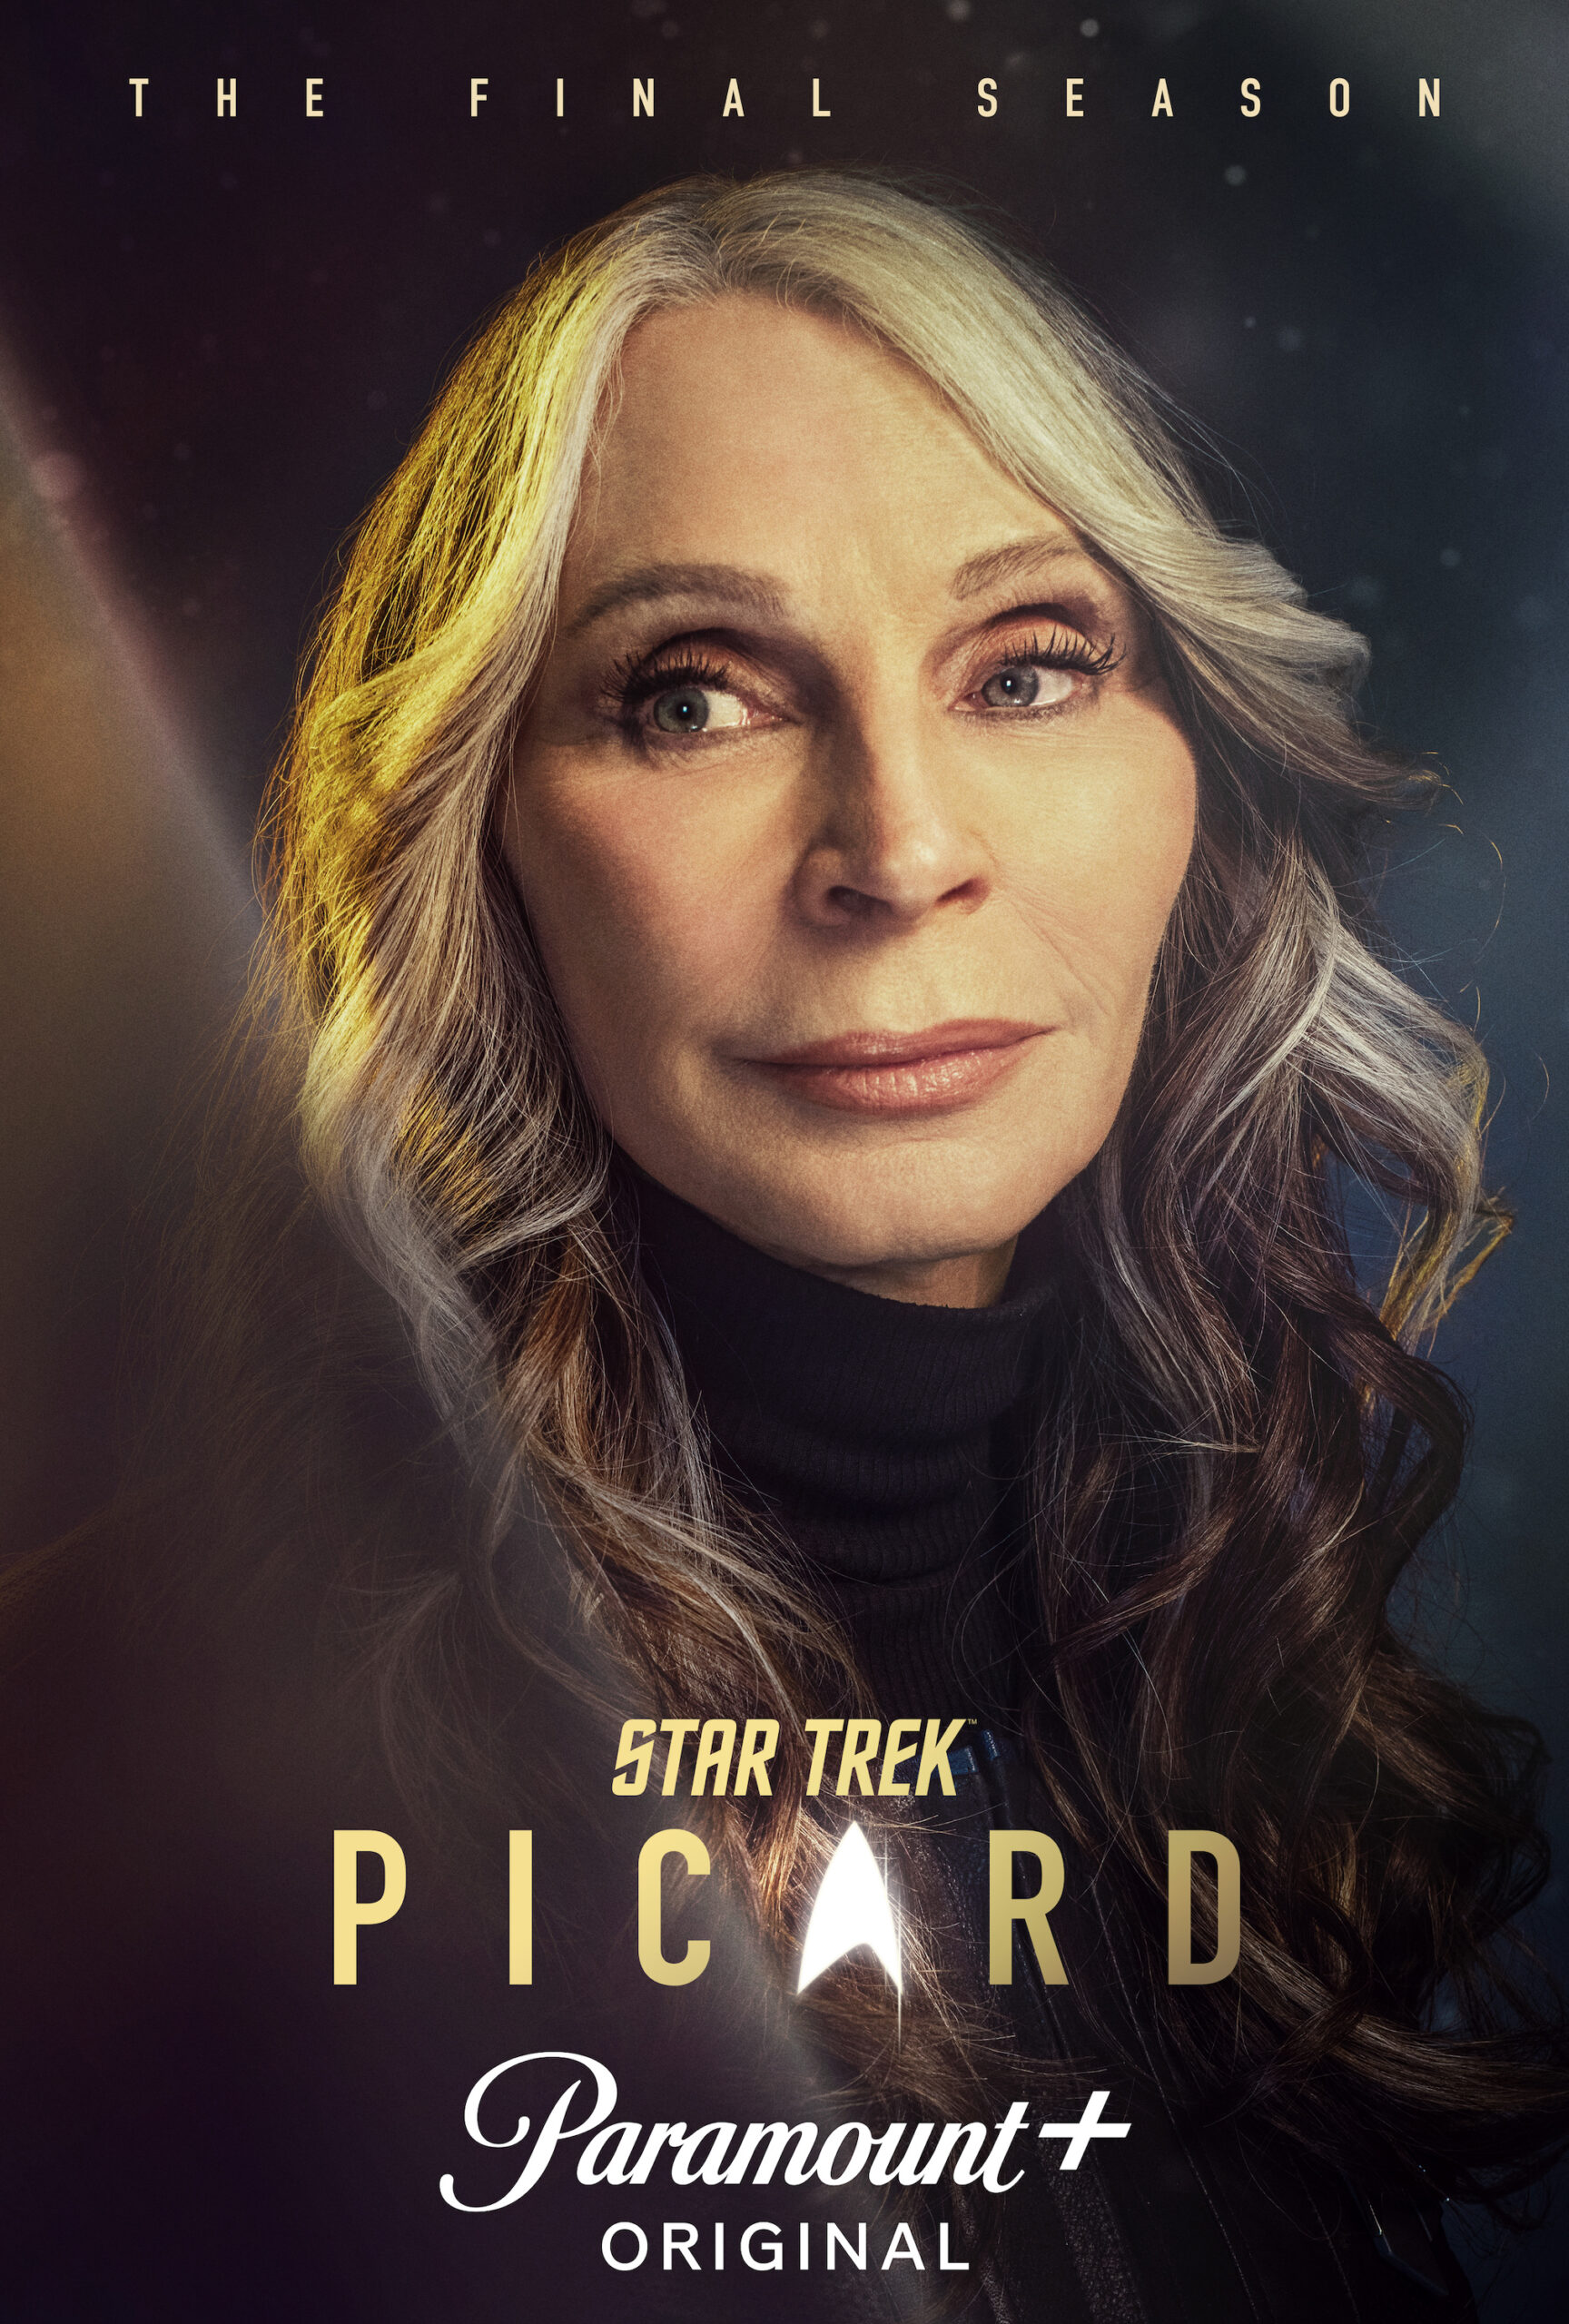 Gates McFadden as Doctor Beverly Crusher in Star Trek: Picard